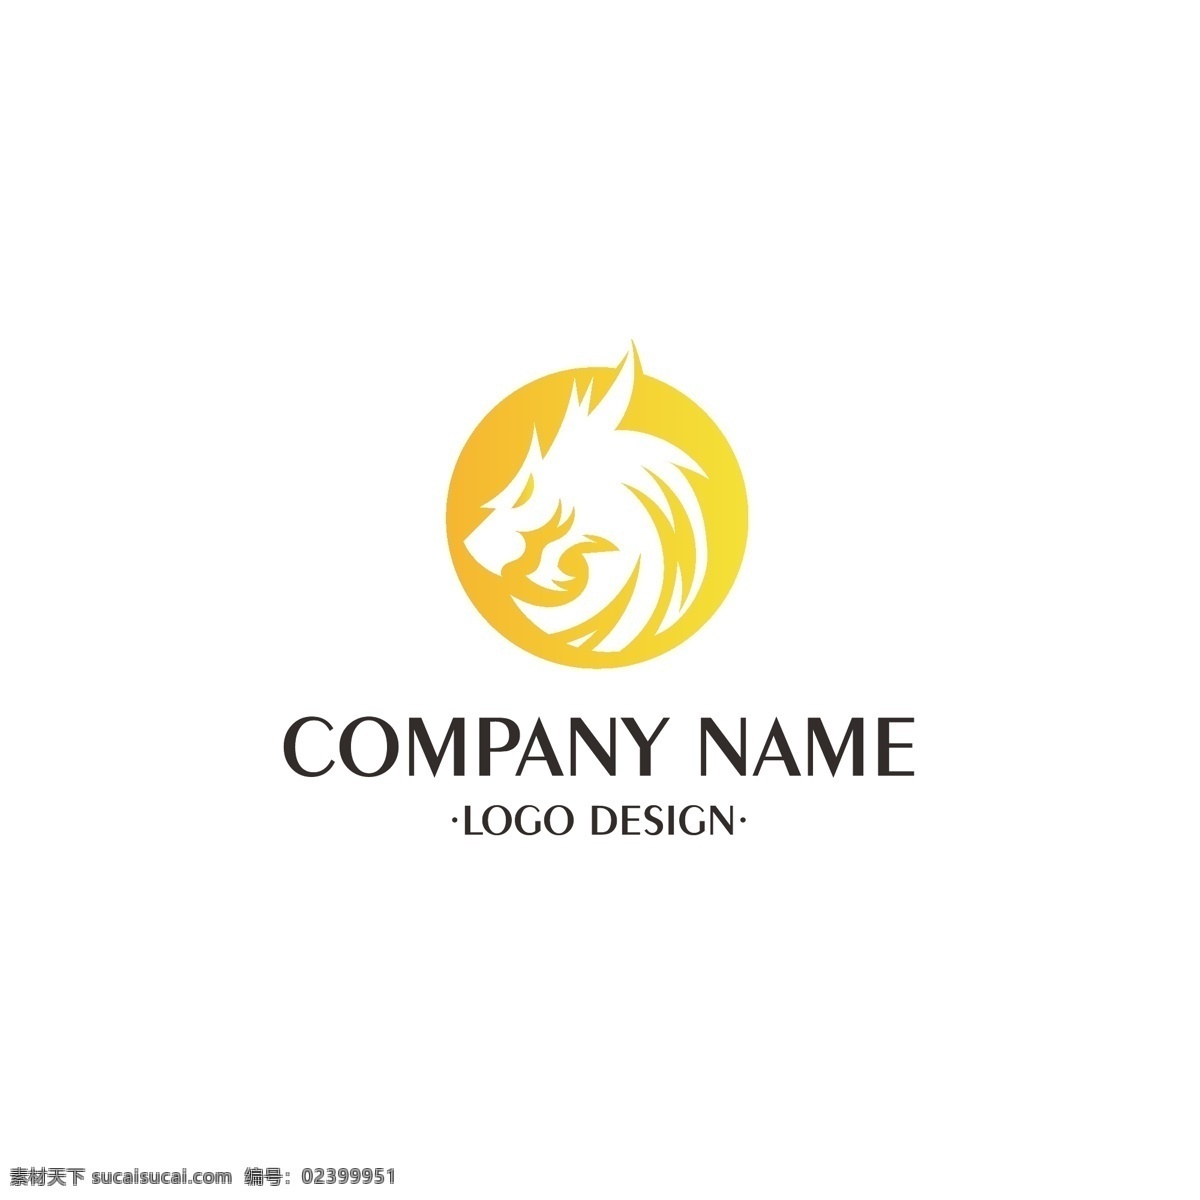 企业 龙头 logo 简约 大气 高档 公司 商业 建筑